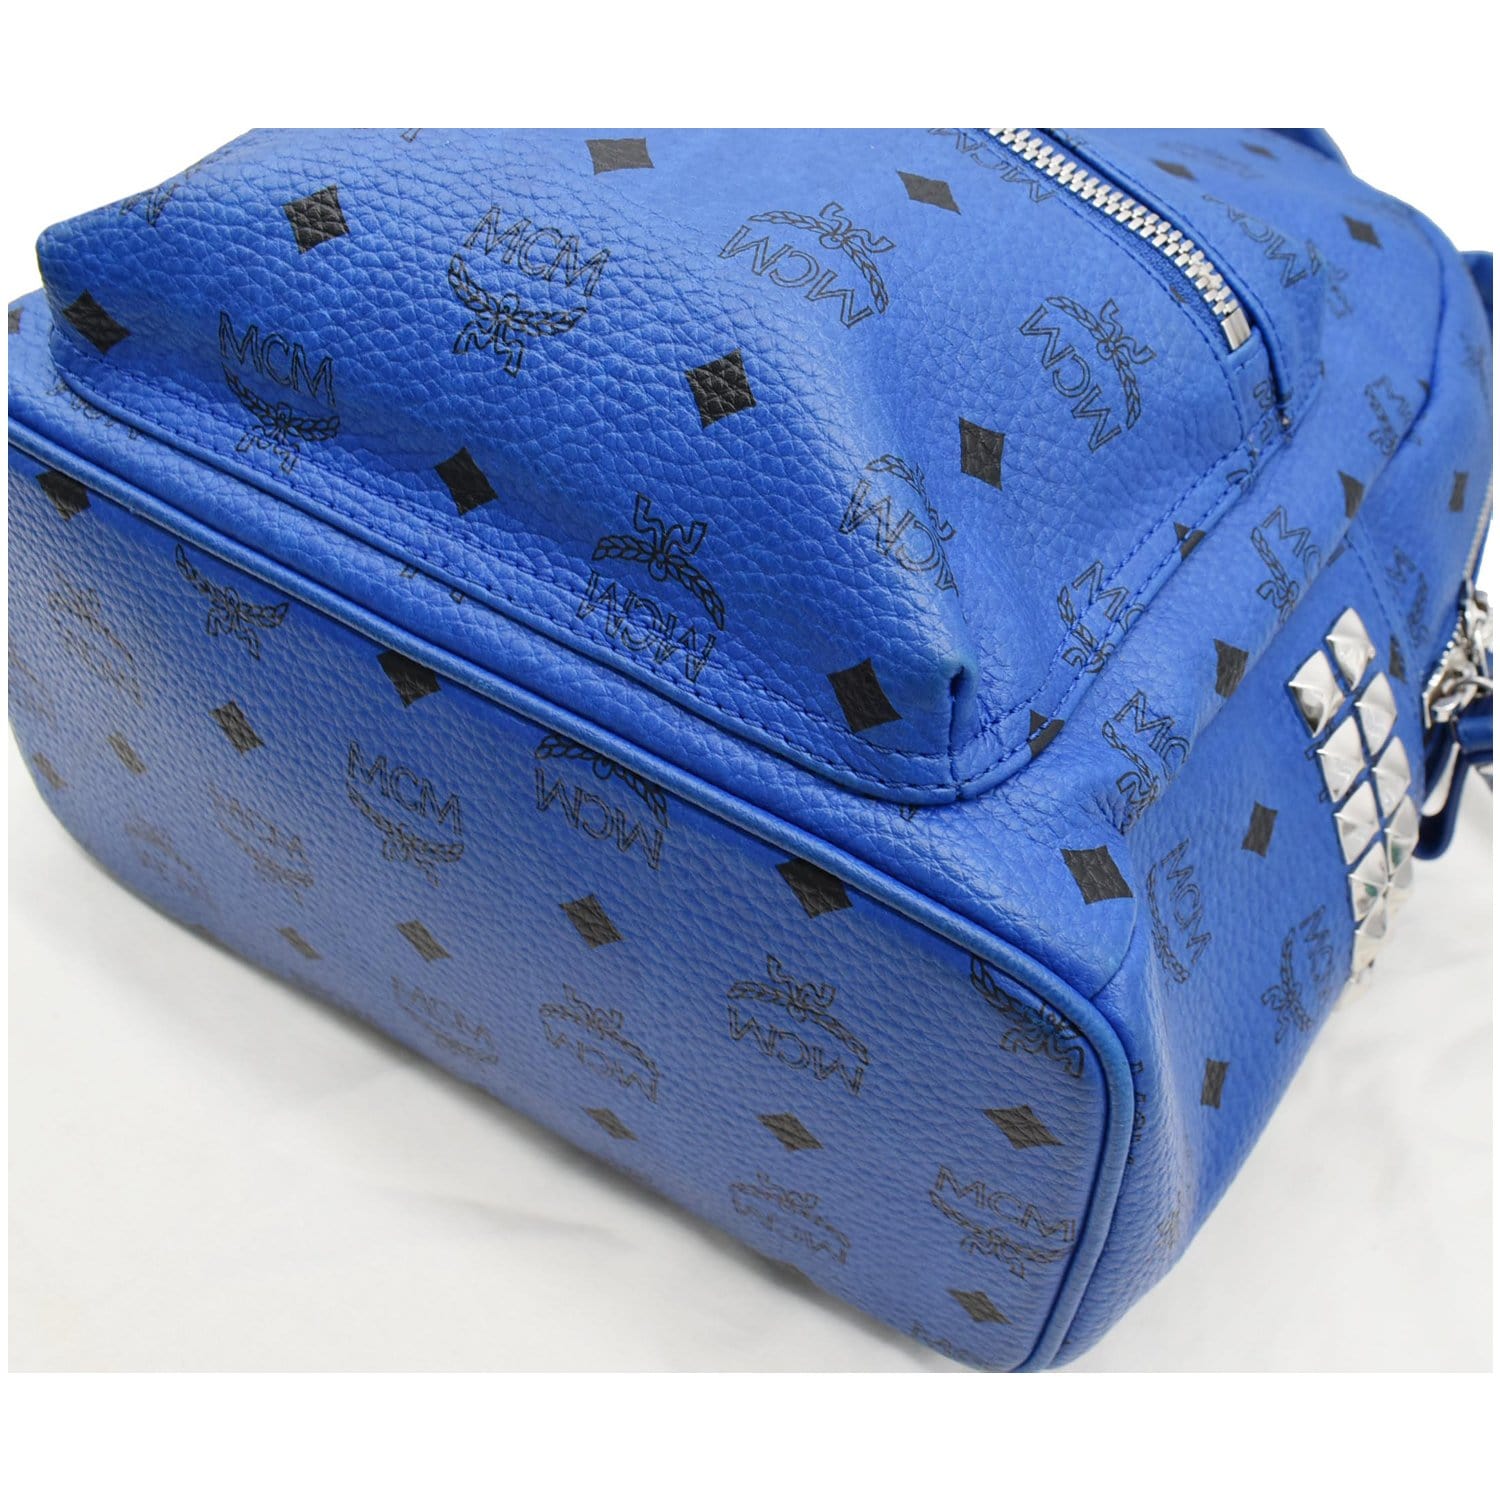 royal blue mcm backpack